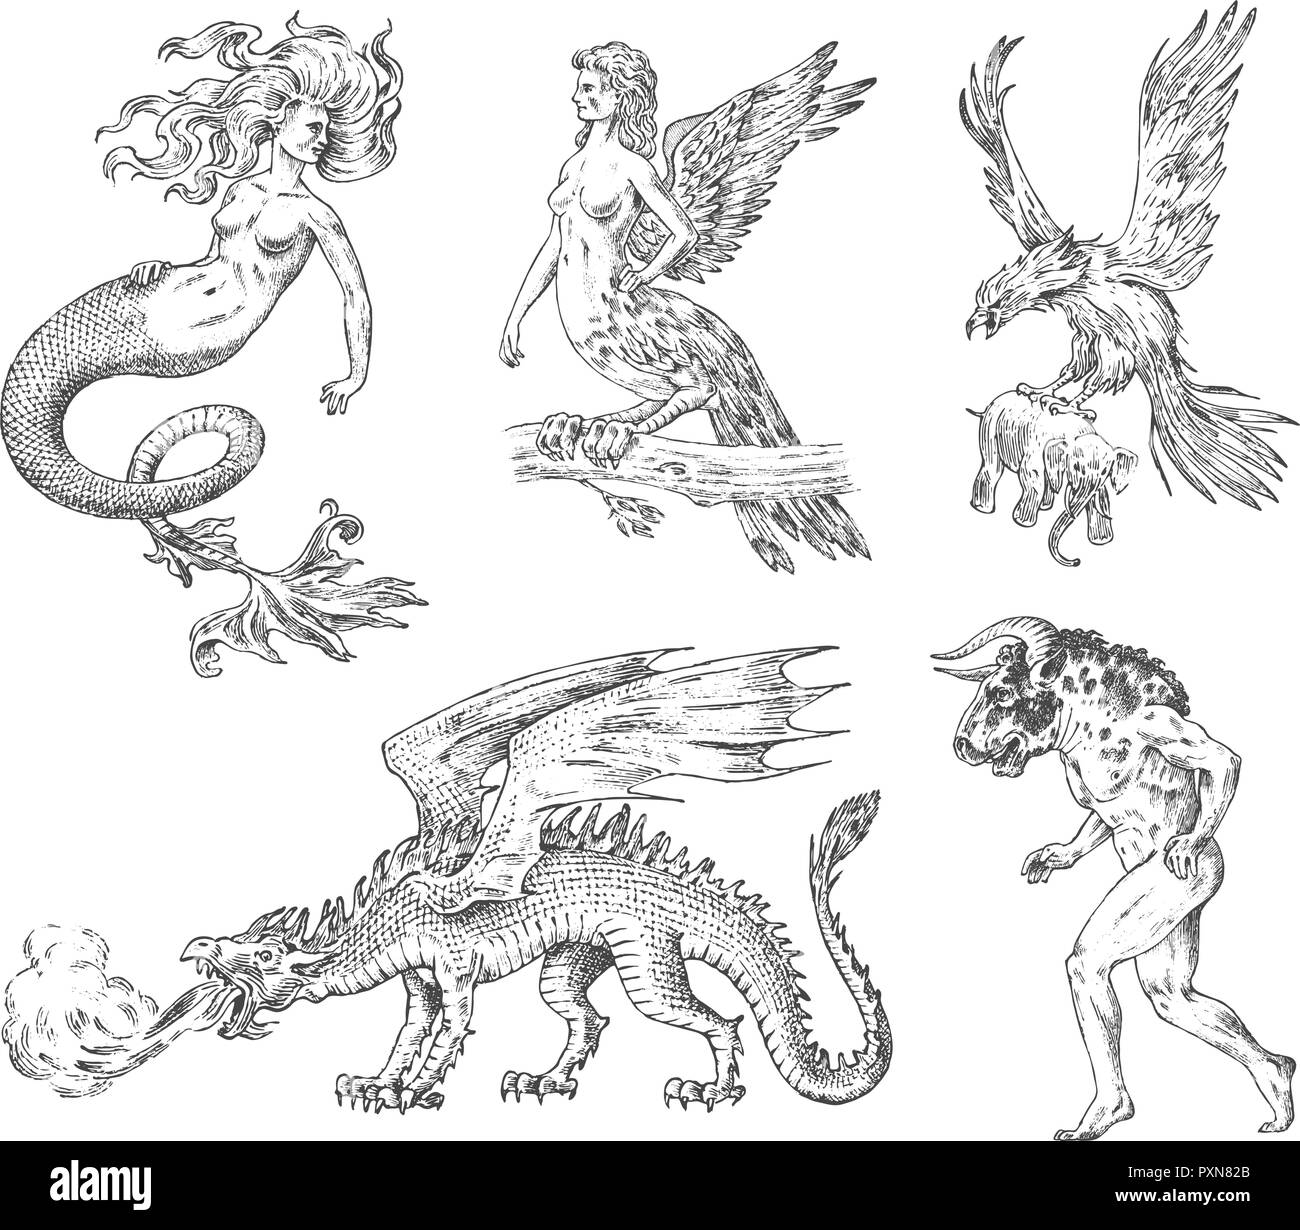 Conjunto de los animales mitológicos. Mermaid Minotauro dragón chino Arpía mítico Griffin Basilisk Roc Mujer pájaro. Las criaturas griegas. Grabados Antiguos dibujados a mano vintage sketch. Ilustración del Vector